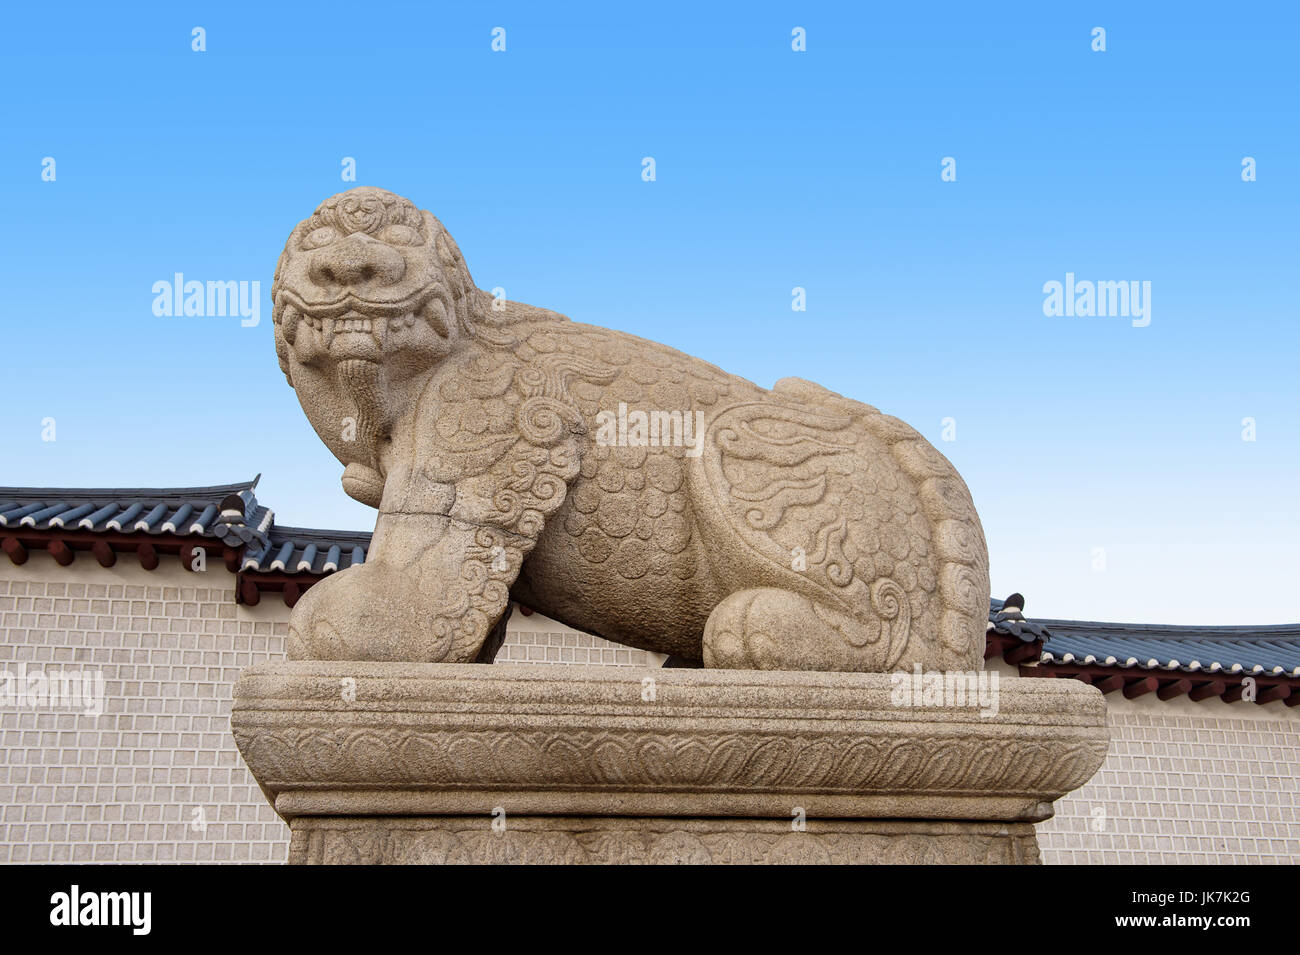 Haechi,Statue of a mythological lion-like animal at Gyeongbokgung Palace,South Korea. Stock Photo